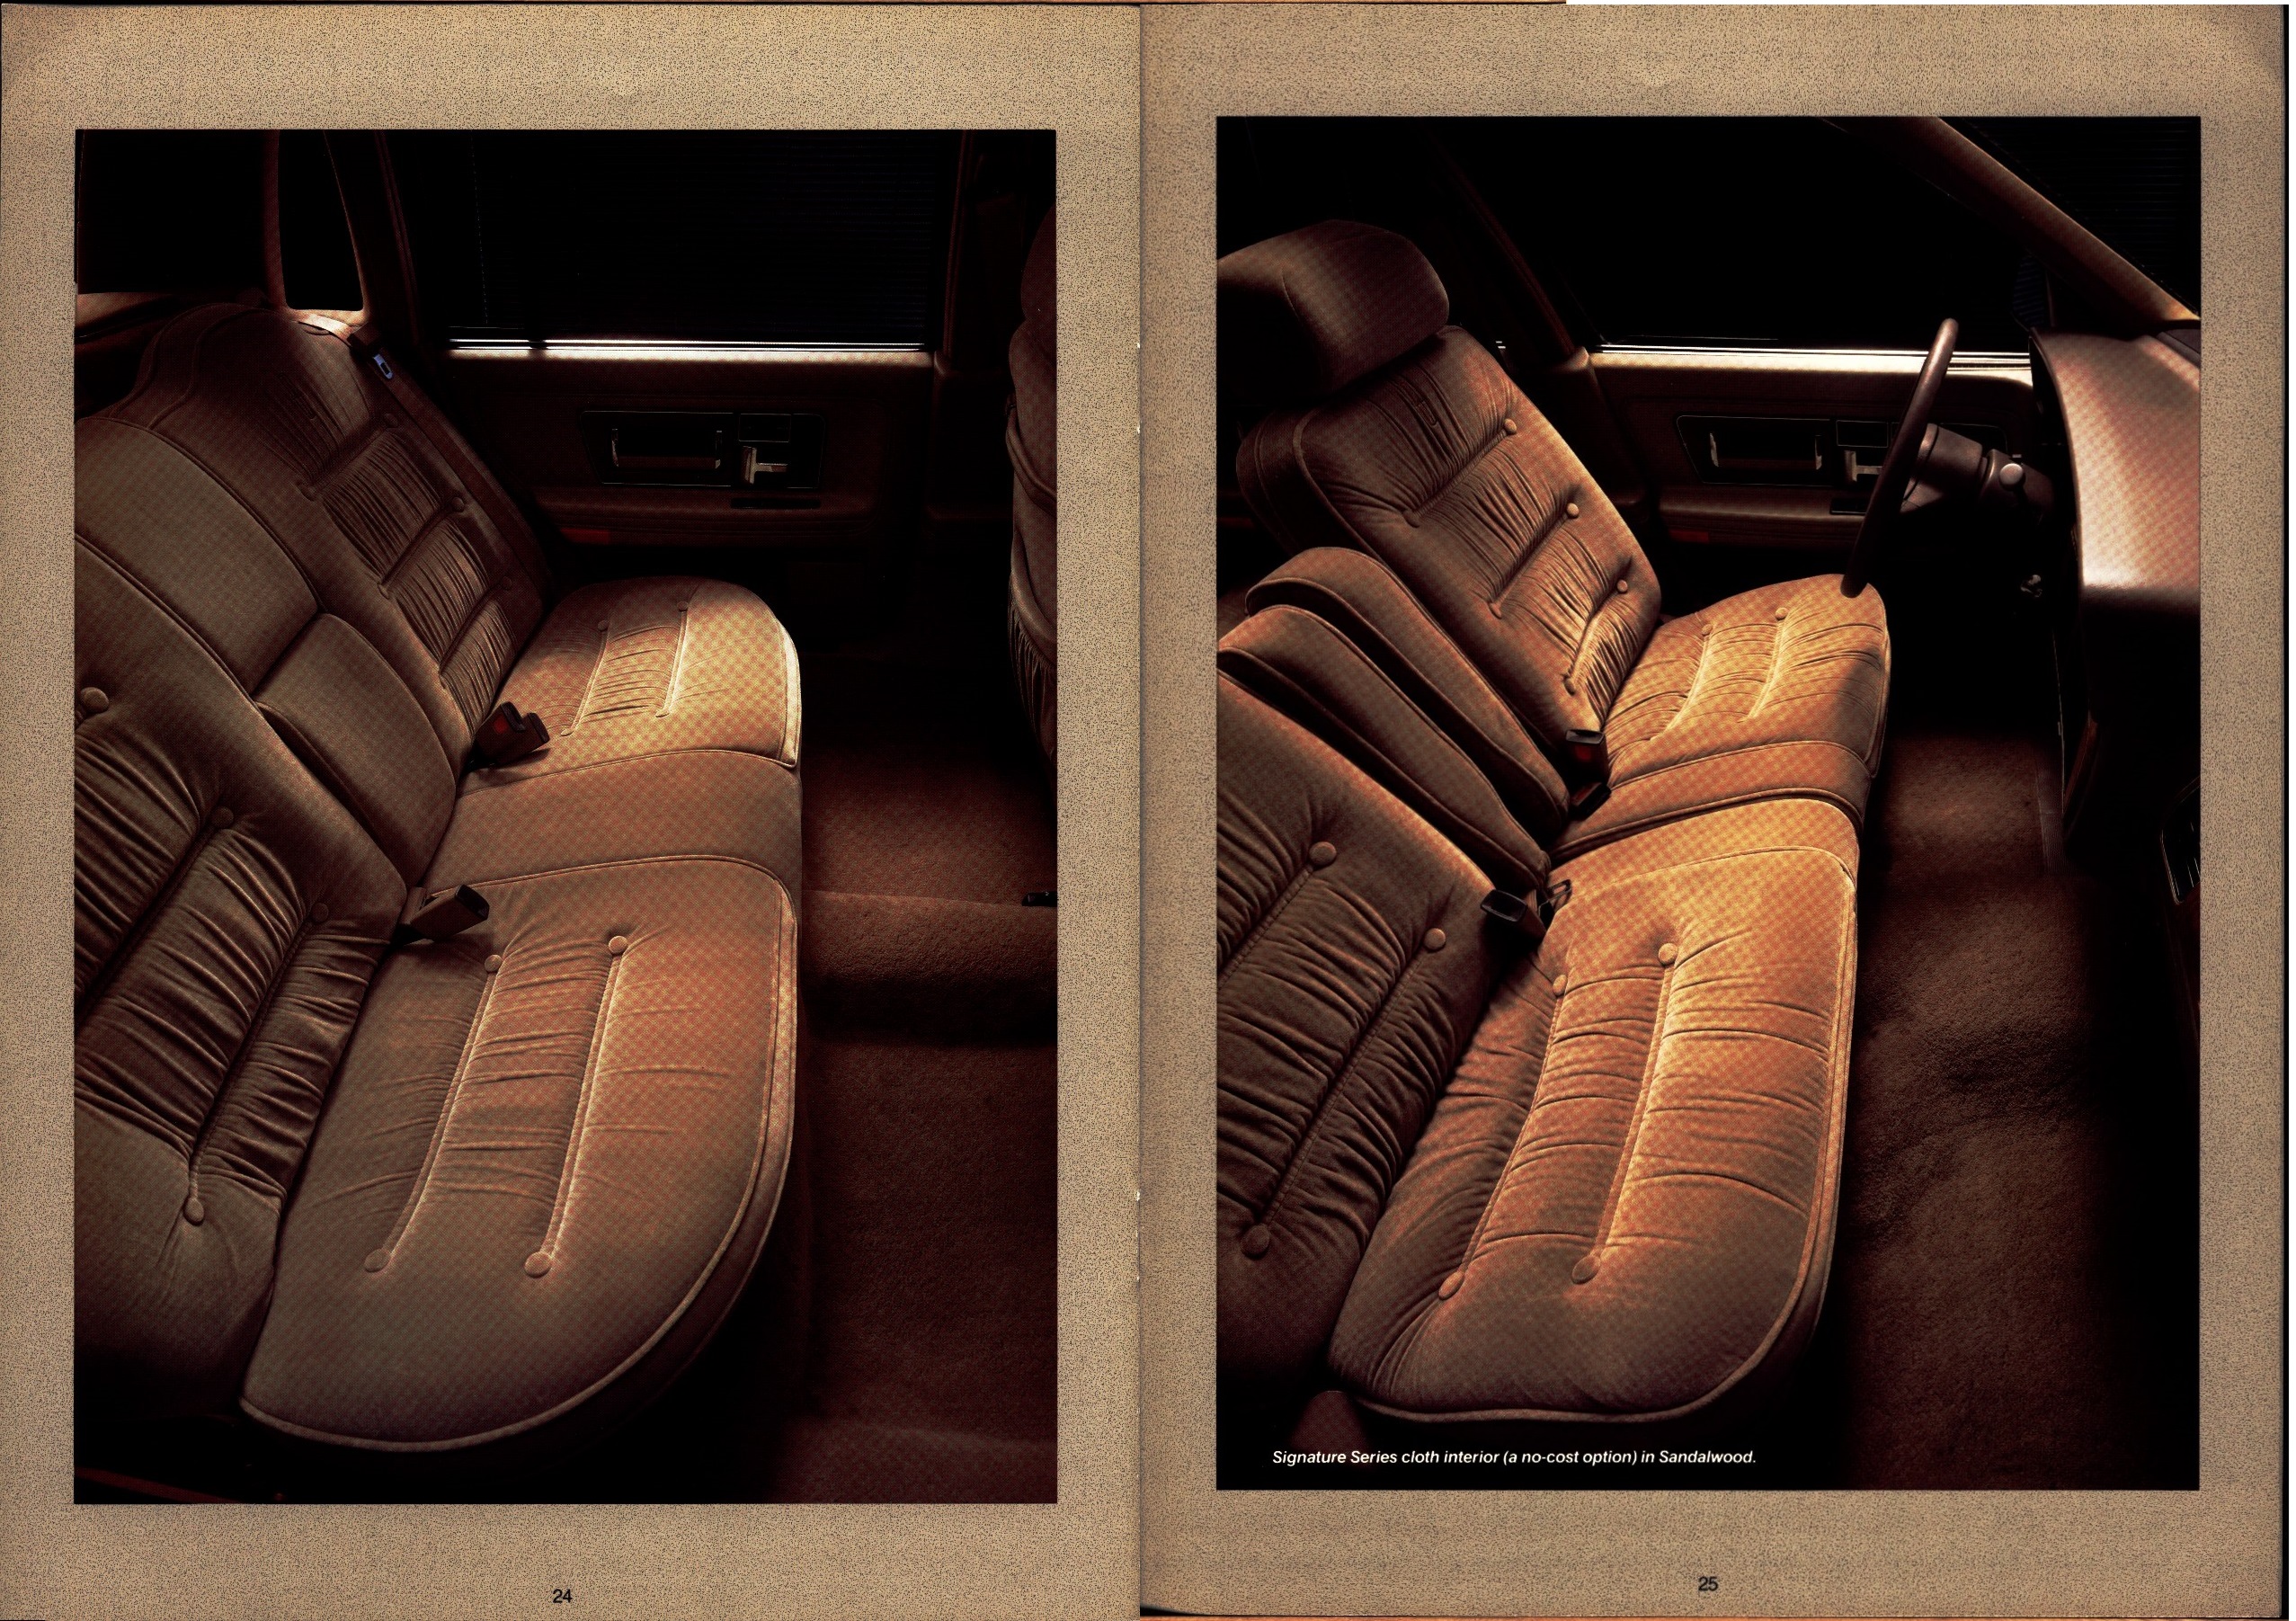 1988 Lincoln Continental Prestige Brochure 24-25